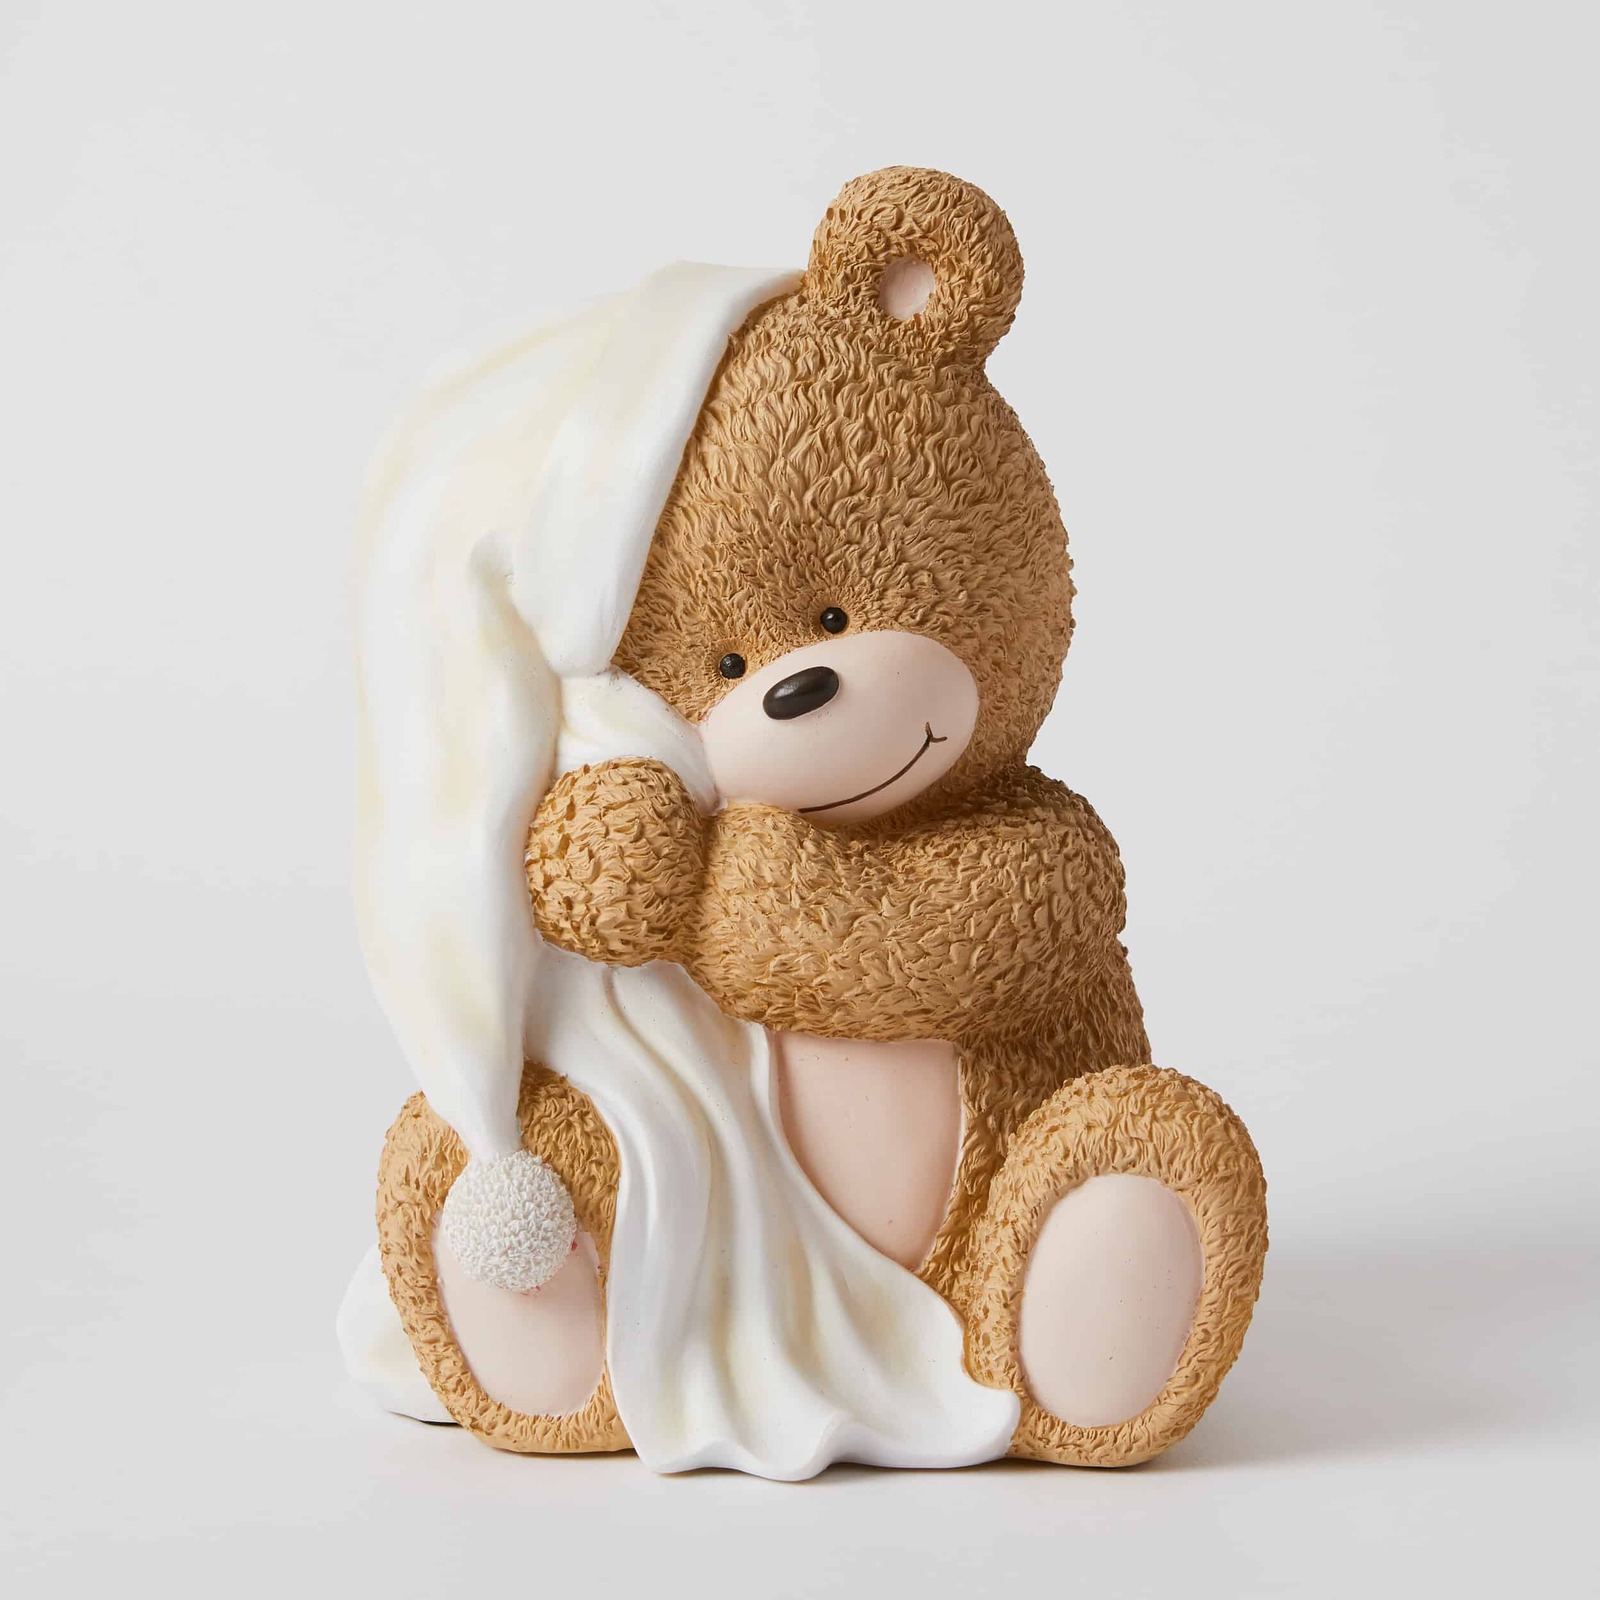 Bedtime Bear Sculptured Light